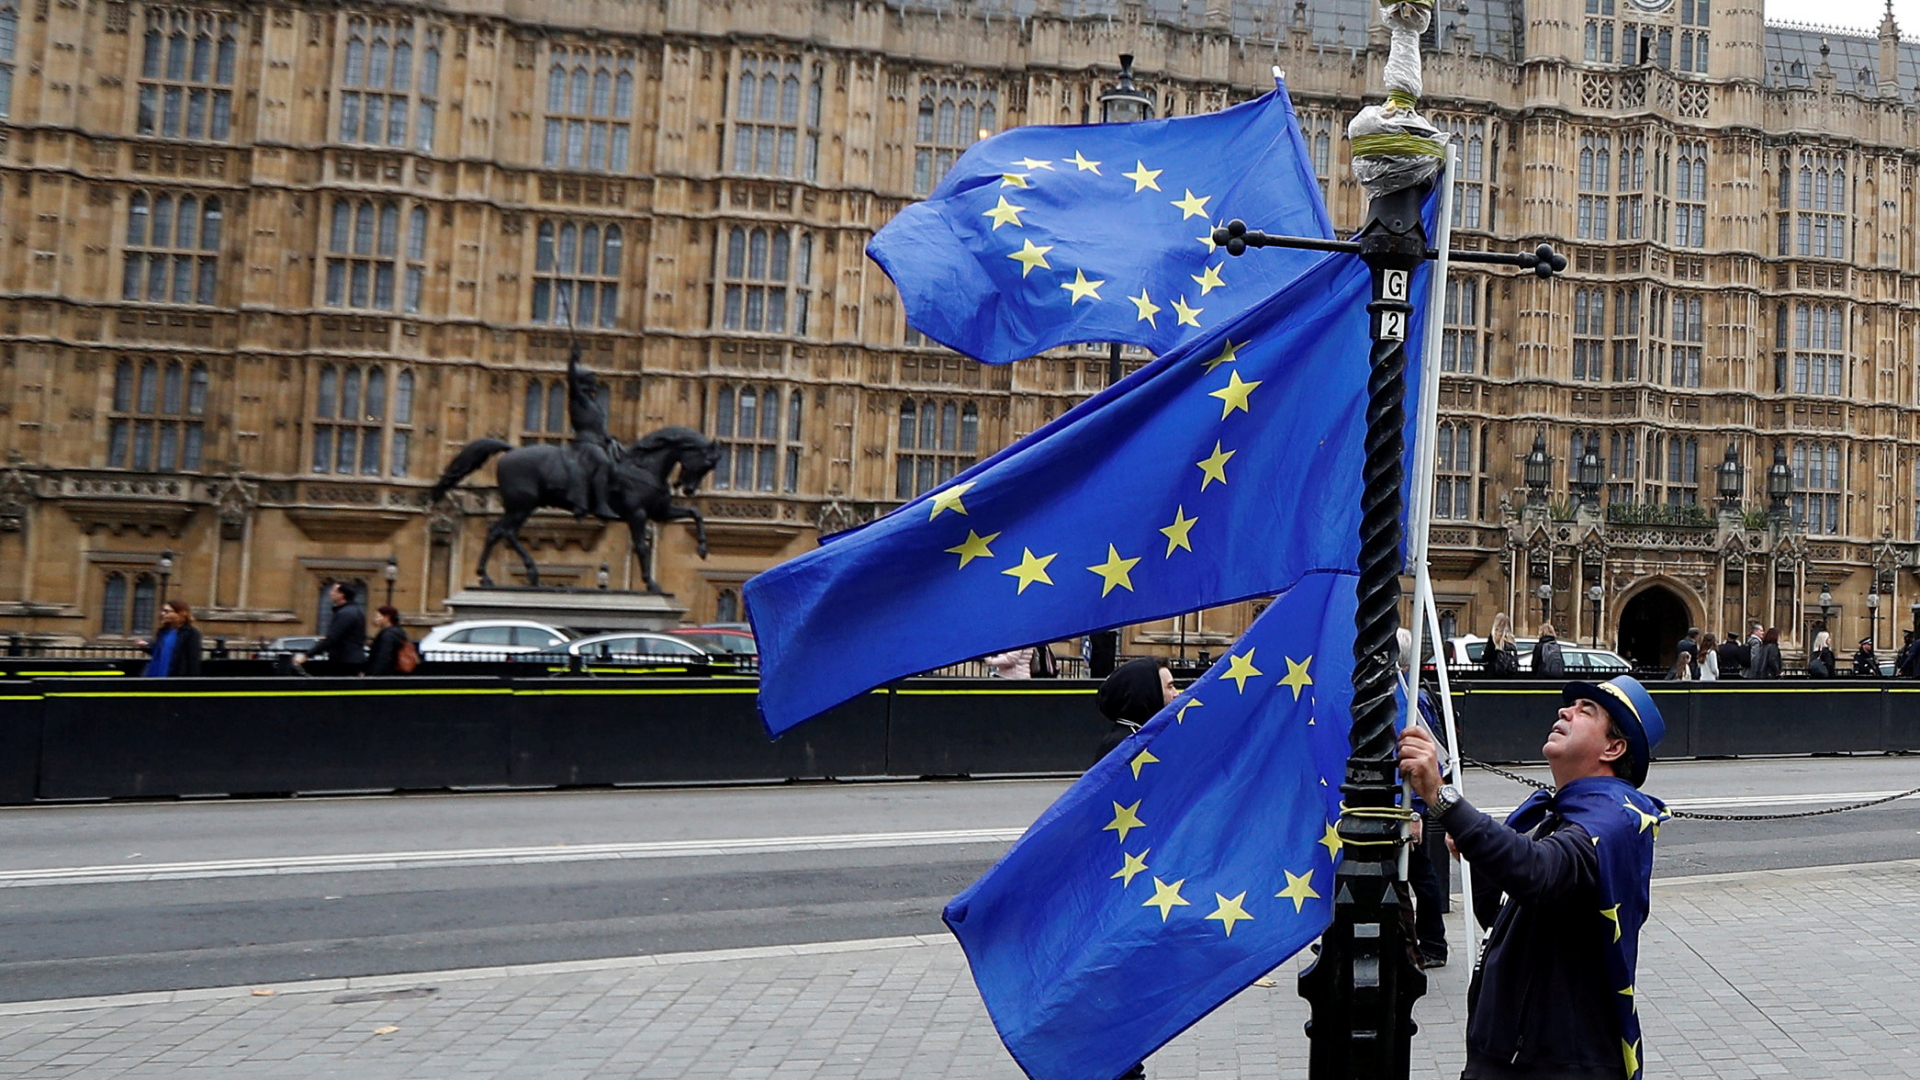 Mann mit EU-Flaggen in London